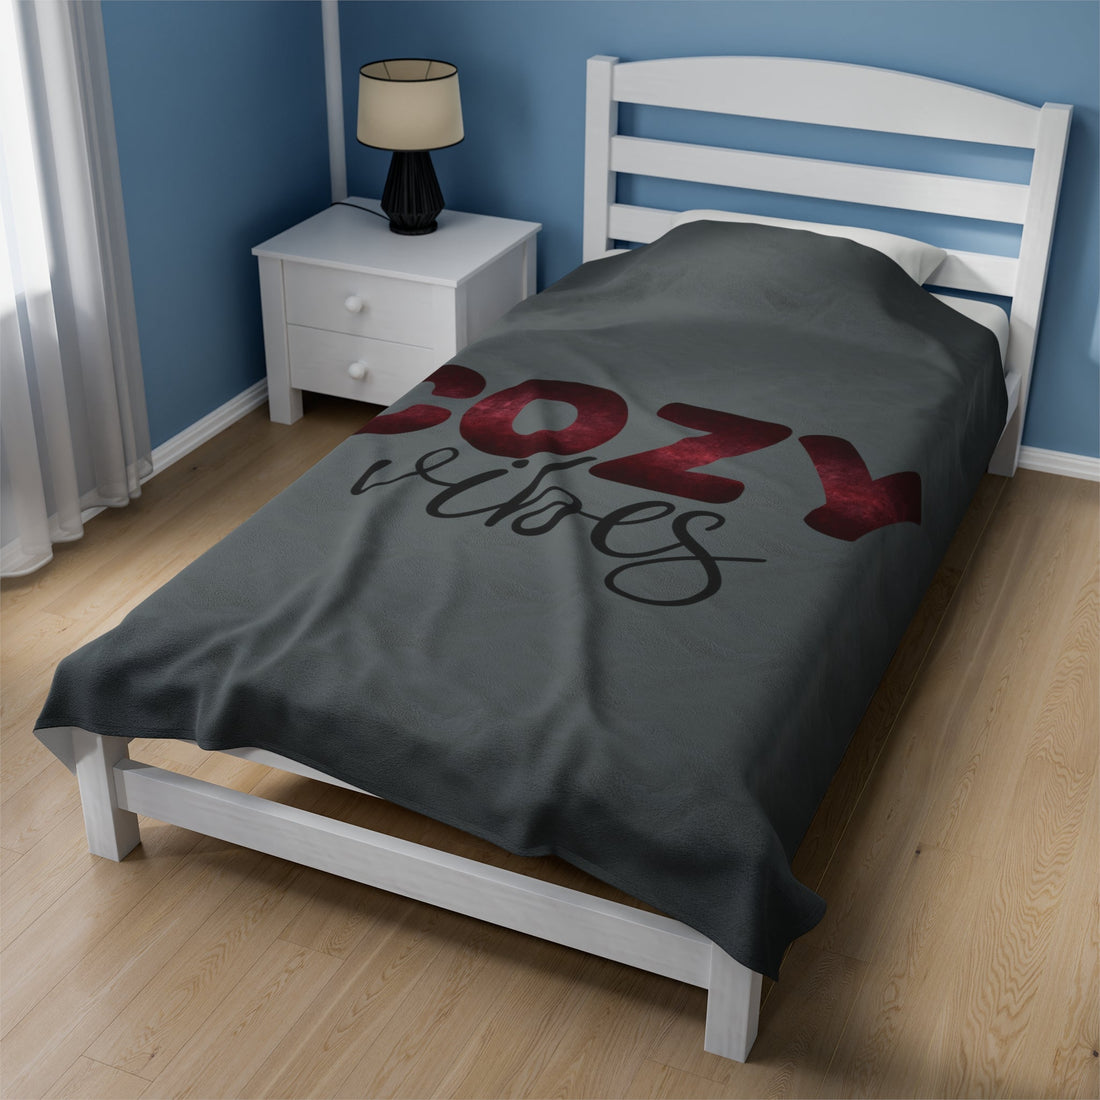 Cozy Vibes Velveteen Plush Blanket - All Over Prints - Positively Sassy - Cozy Vibes Velveteen Plush Blanket